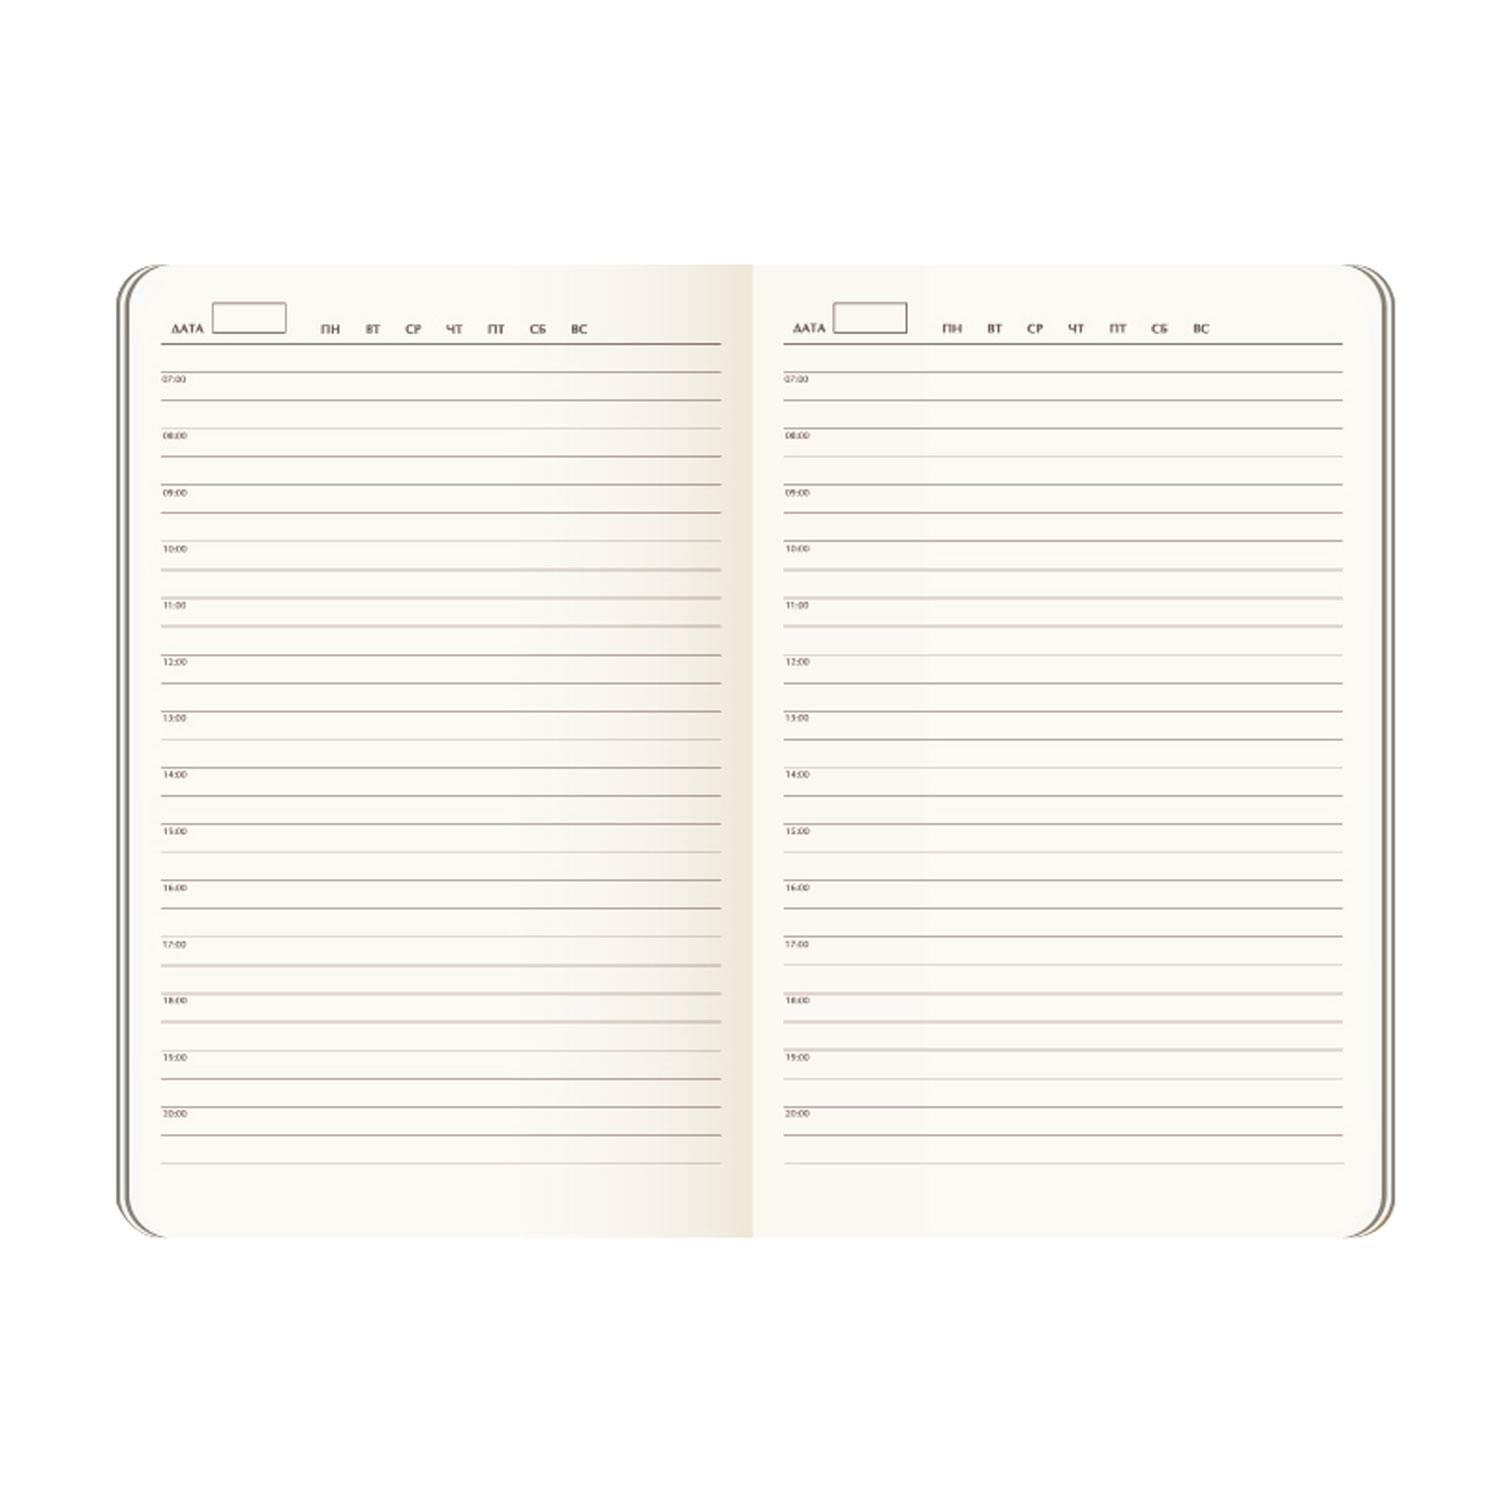 Ежедневник недатированный Portland Btobook, оранжевый (без упаковки, без стикера)